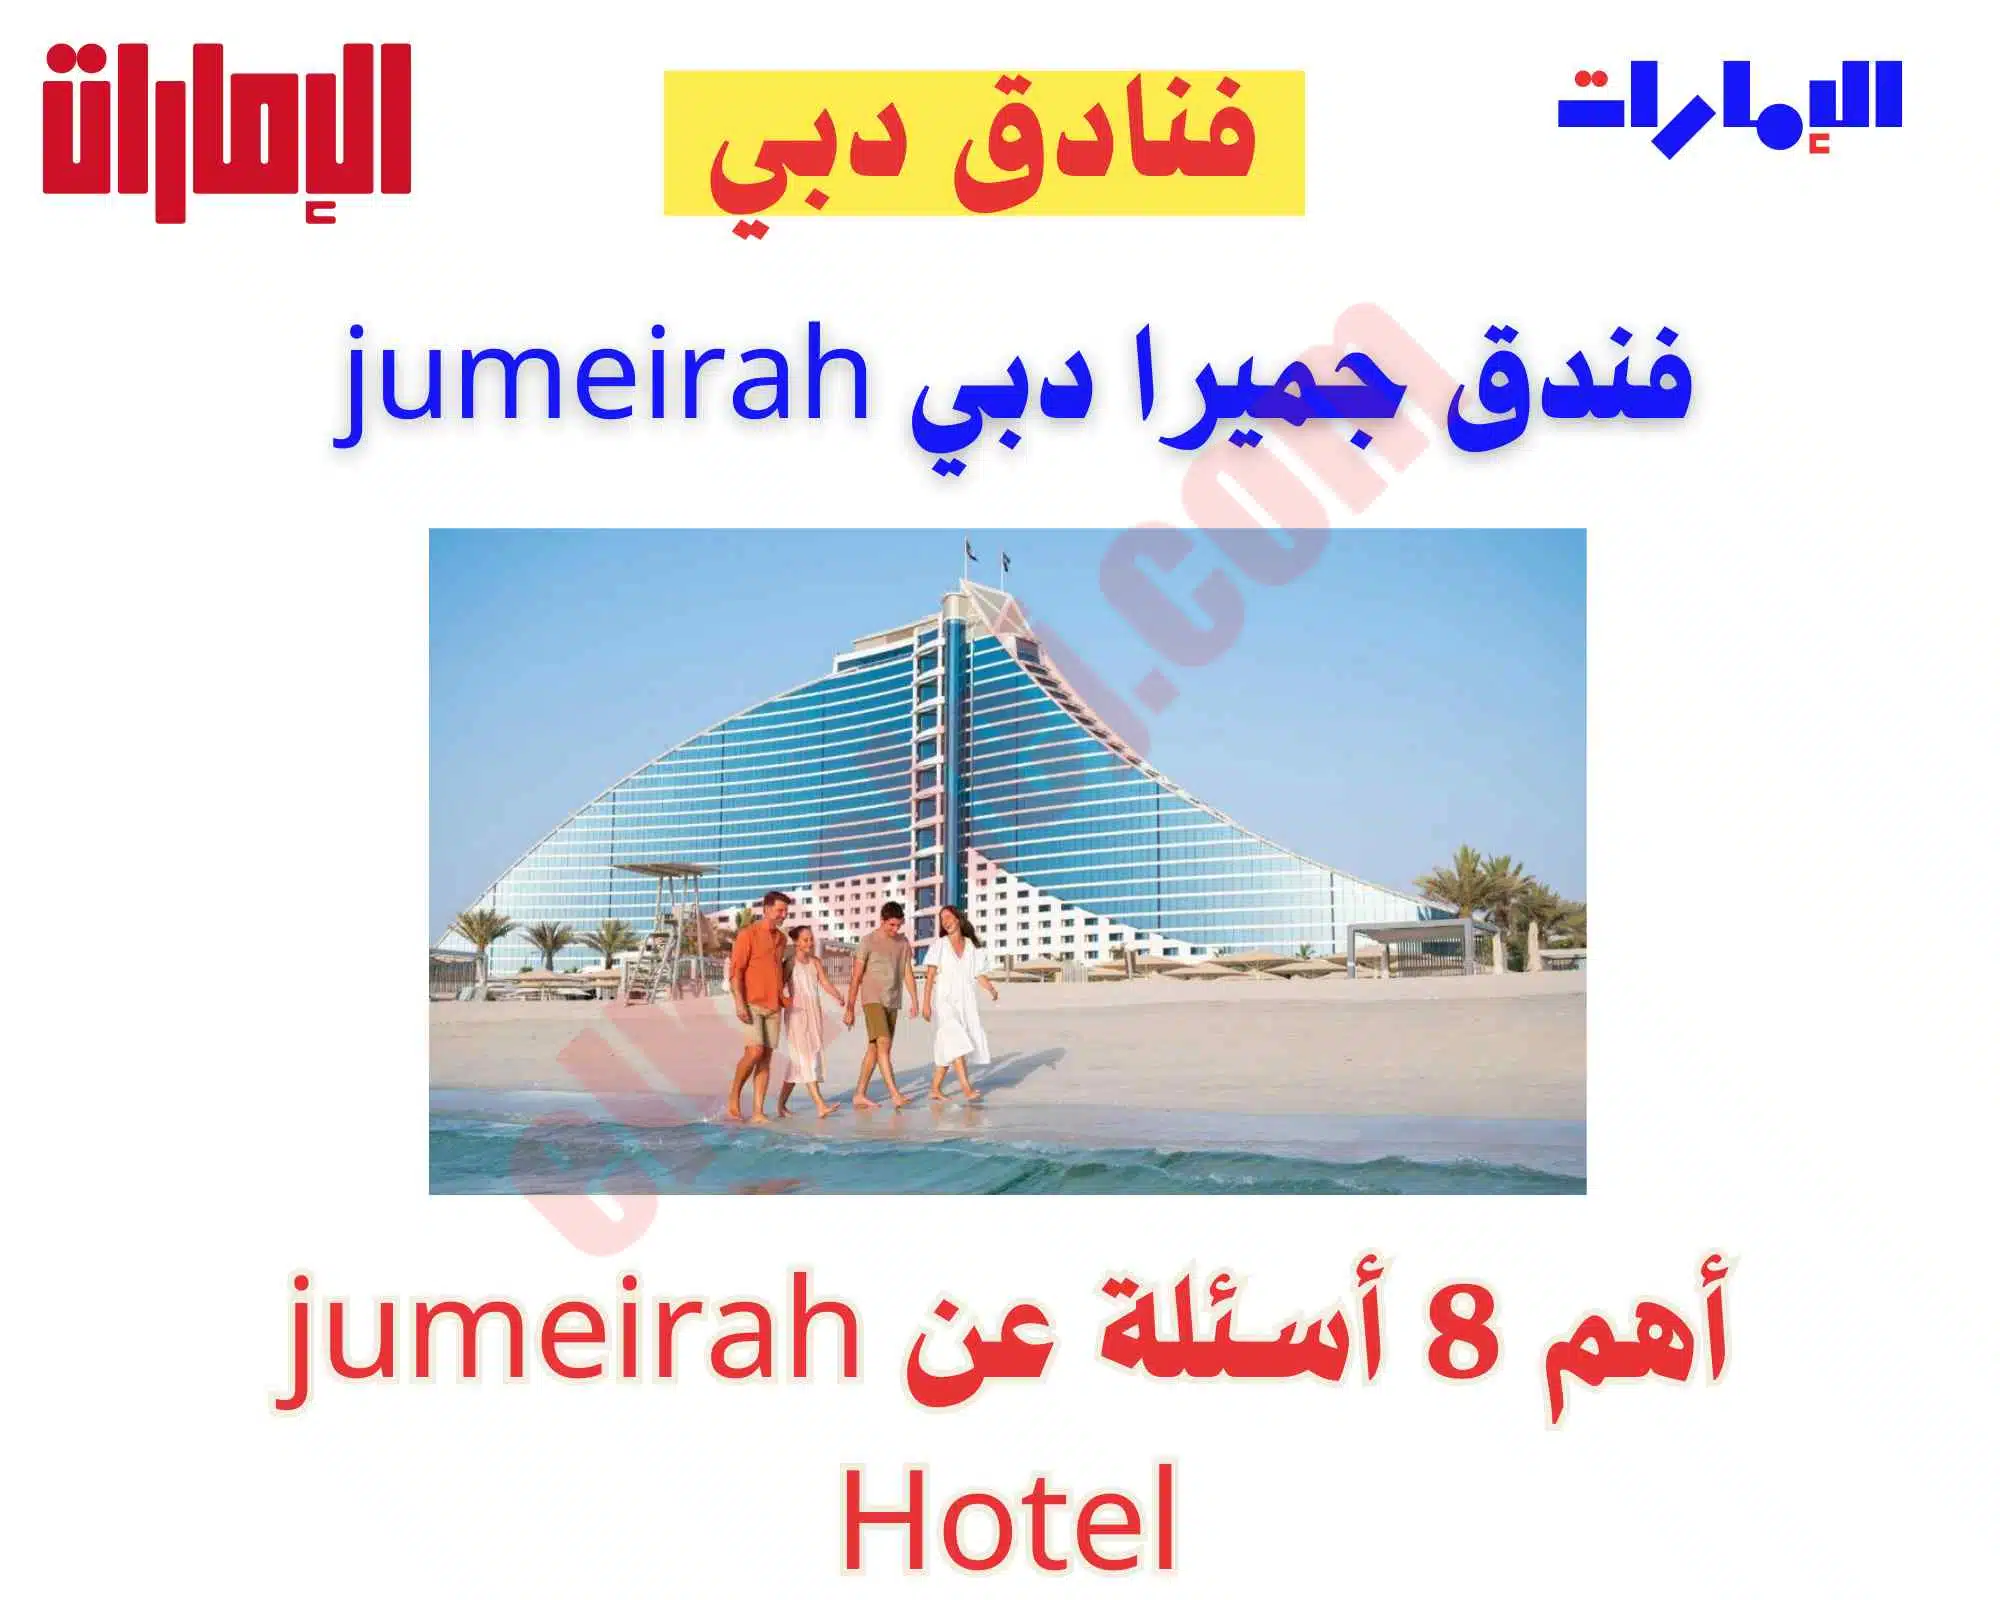 فندق جميرا دبي jumeirah